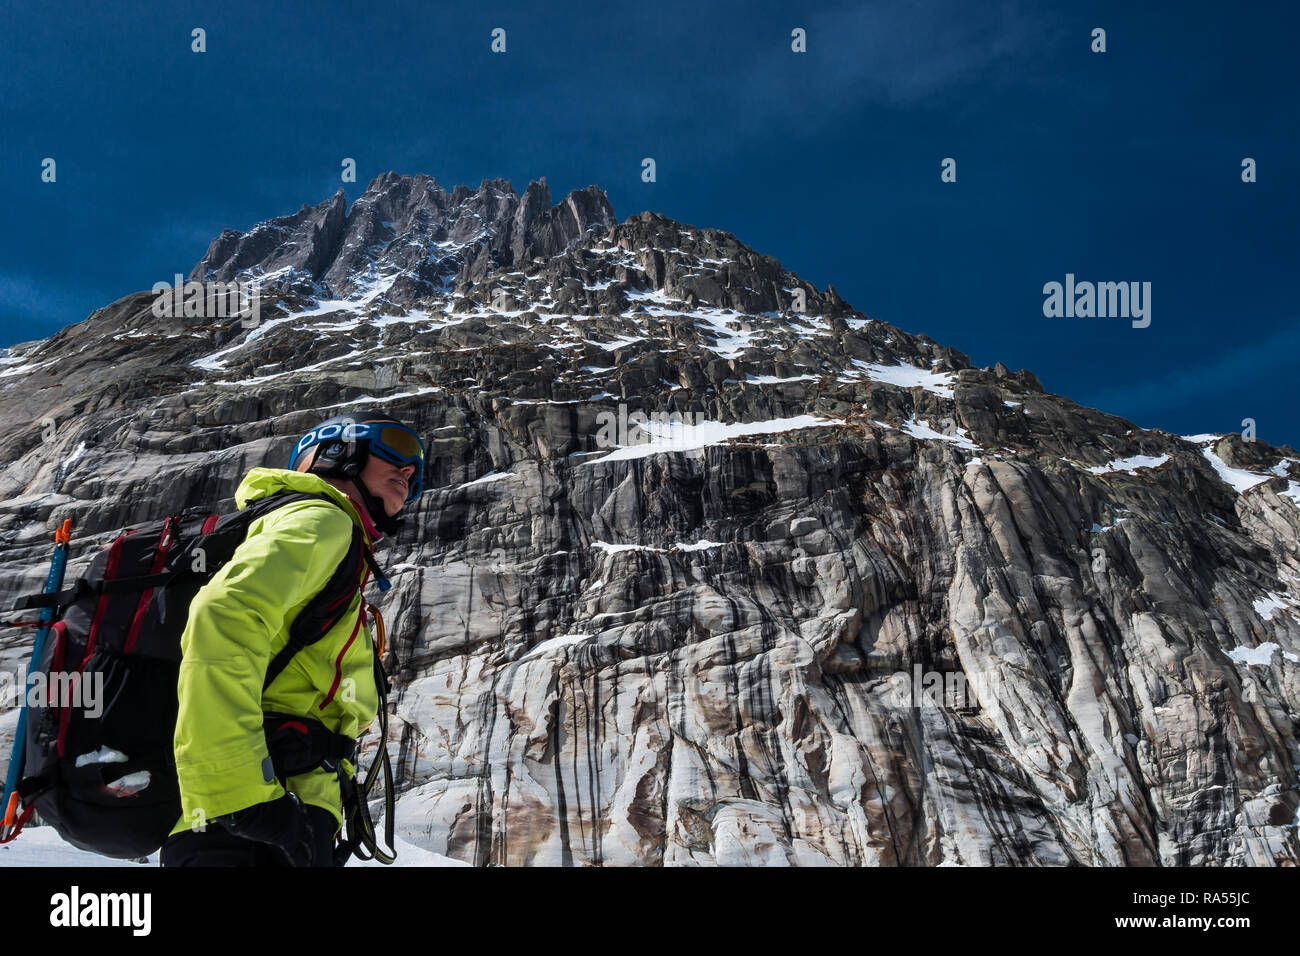 Vallée Blanche, Chamonix, France - 30 Mars, 2017 : femme de ski féminin 159 dans vêtements de ski hiver colorés avec sac à dos et du matériel de sécurité debout dans fr Banque D'Images